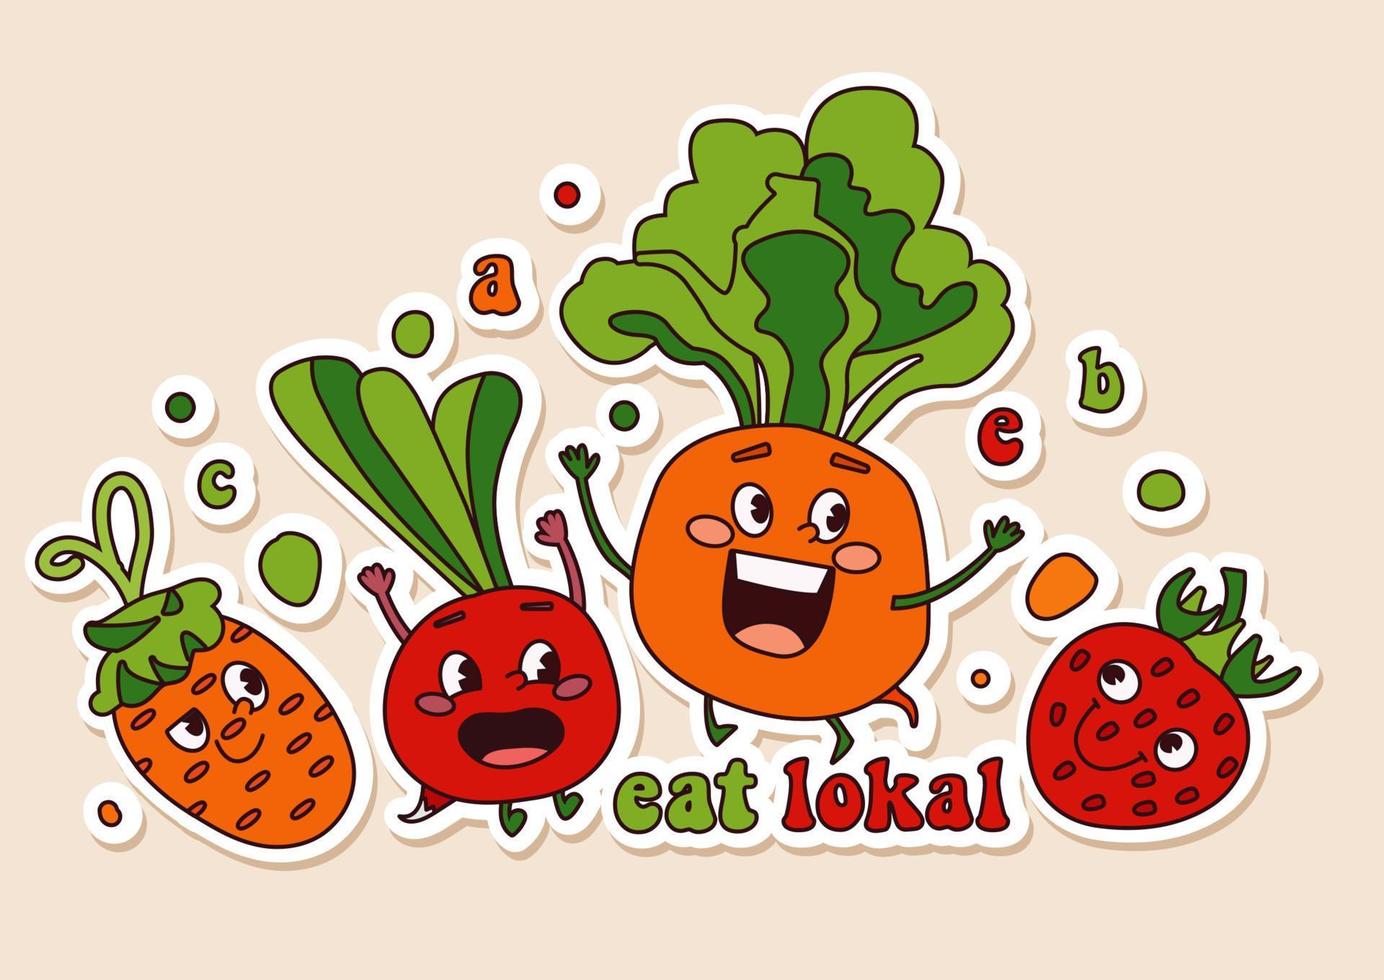 söt och rolig vegetabiliska tecken i olika Framställ och emotionell. uppsättning innehåller jordgubbe, beta, rova, morot. Vecto klistermärke med vegetabiliska maskotar i annorlunda utgör och aktiviteter. vektor